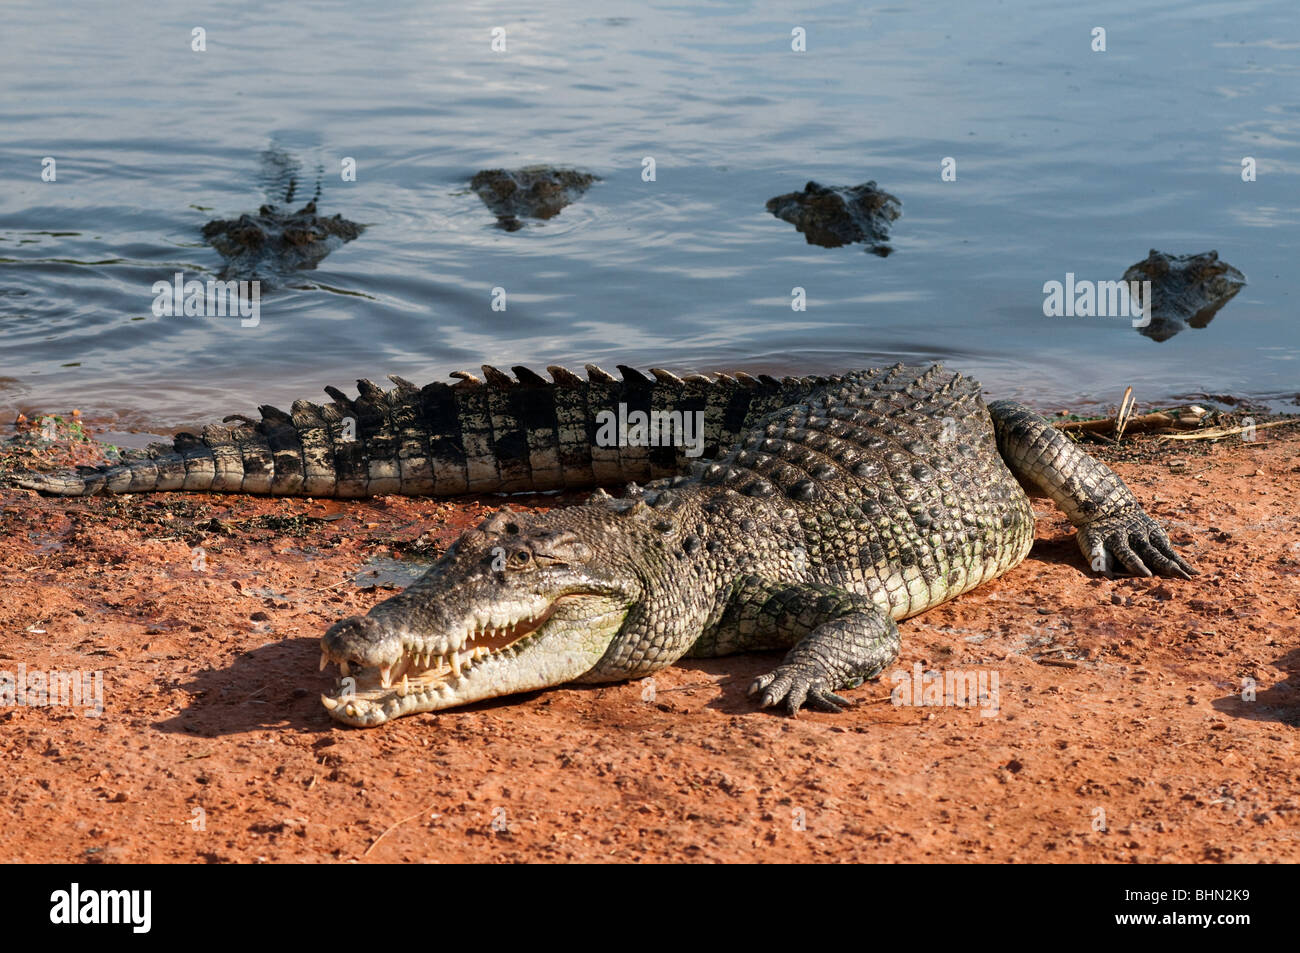 Maschio australiano coccodrillo di acqua salata in attesa di essere alimentato con il suo harem di femmine in background Foto Stock